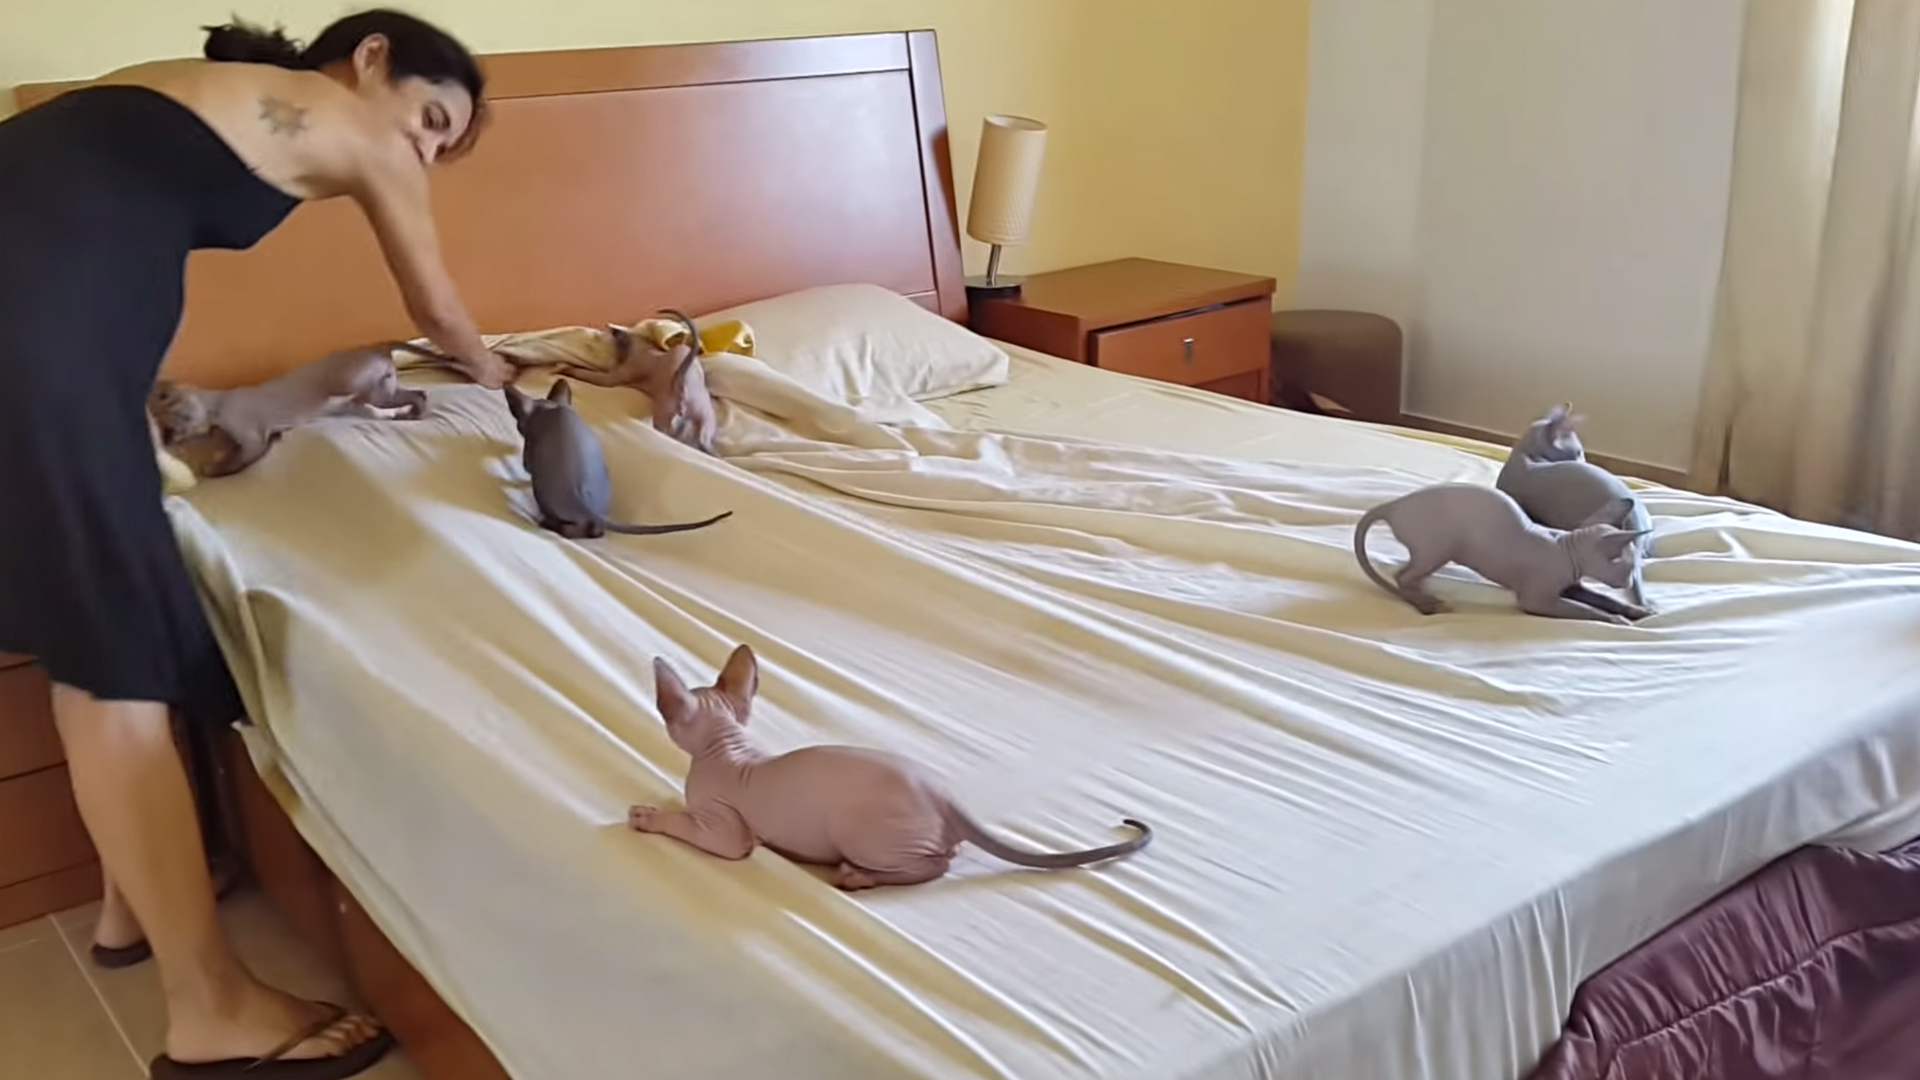 بالفيديو مجموعة قطط ت ساعد امرأة على ترتيب سريرها